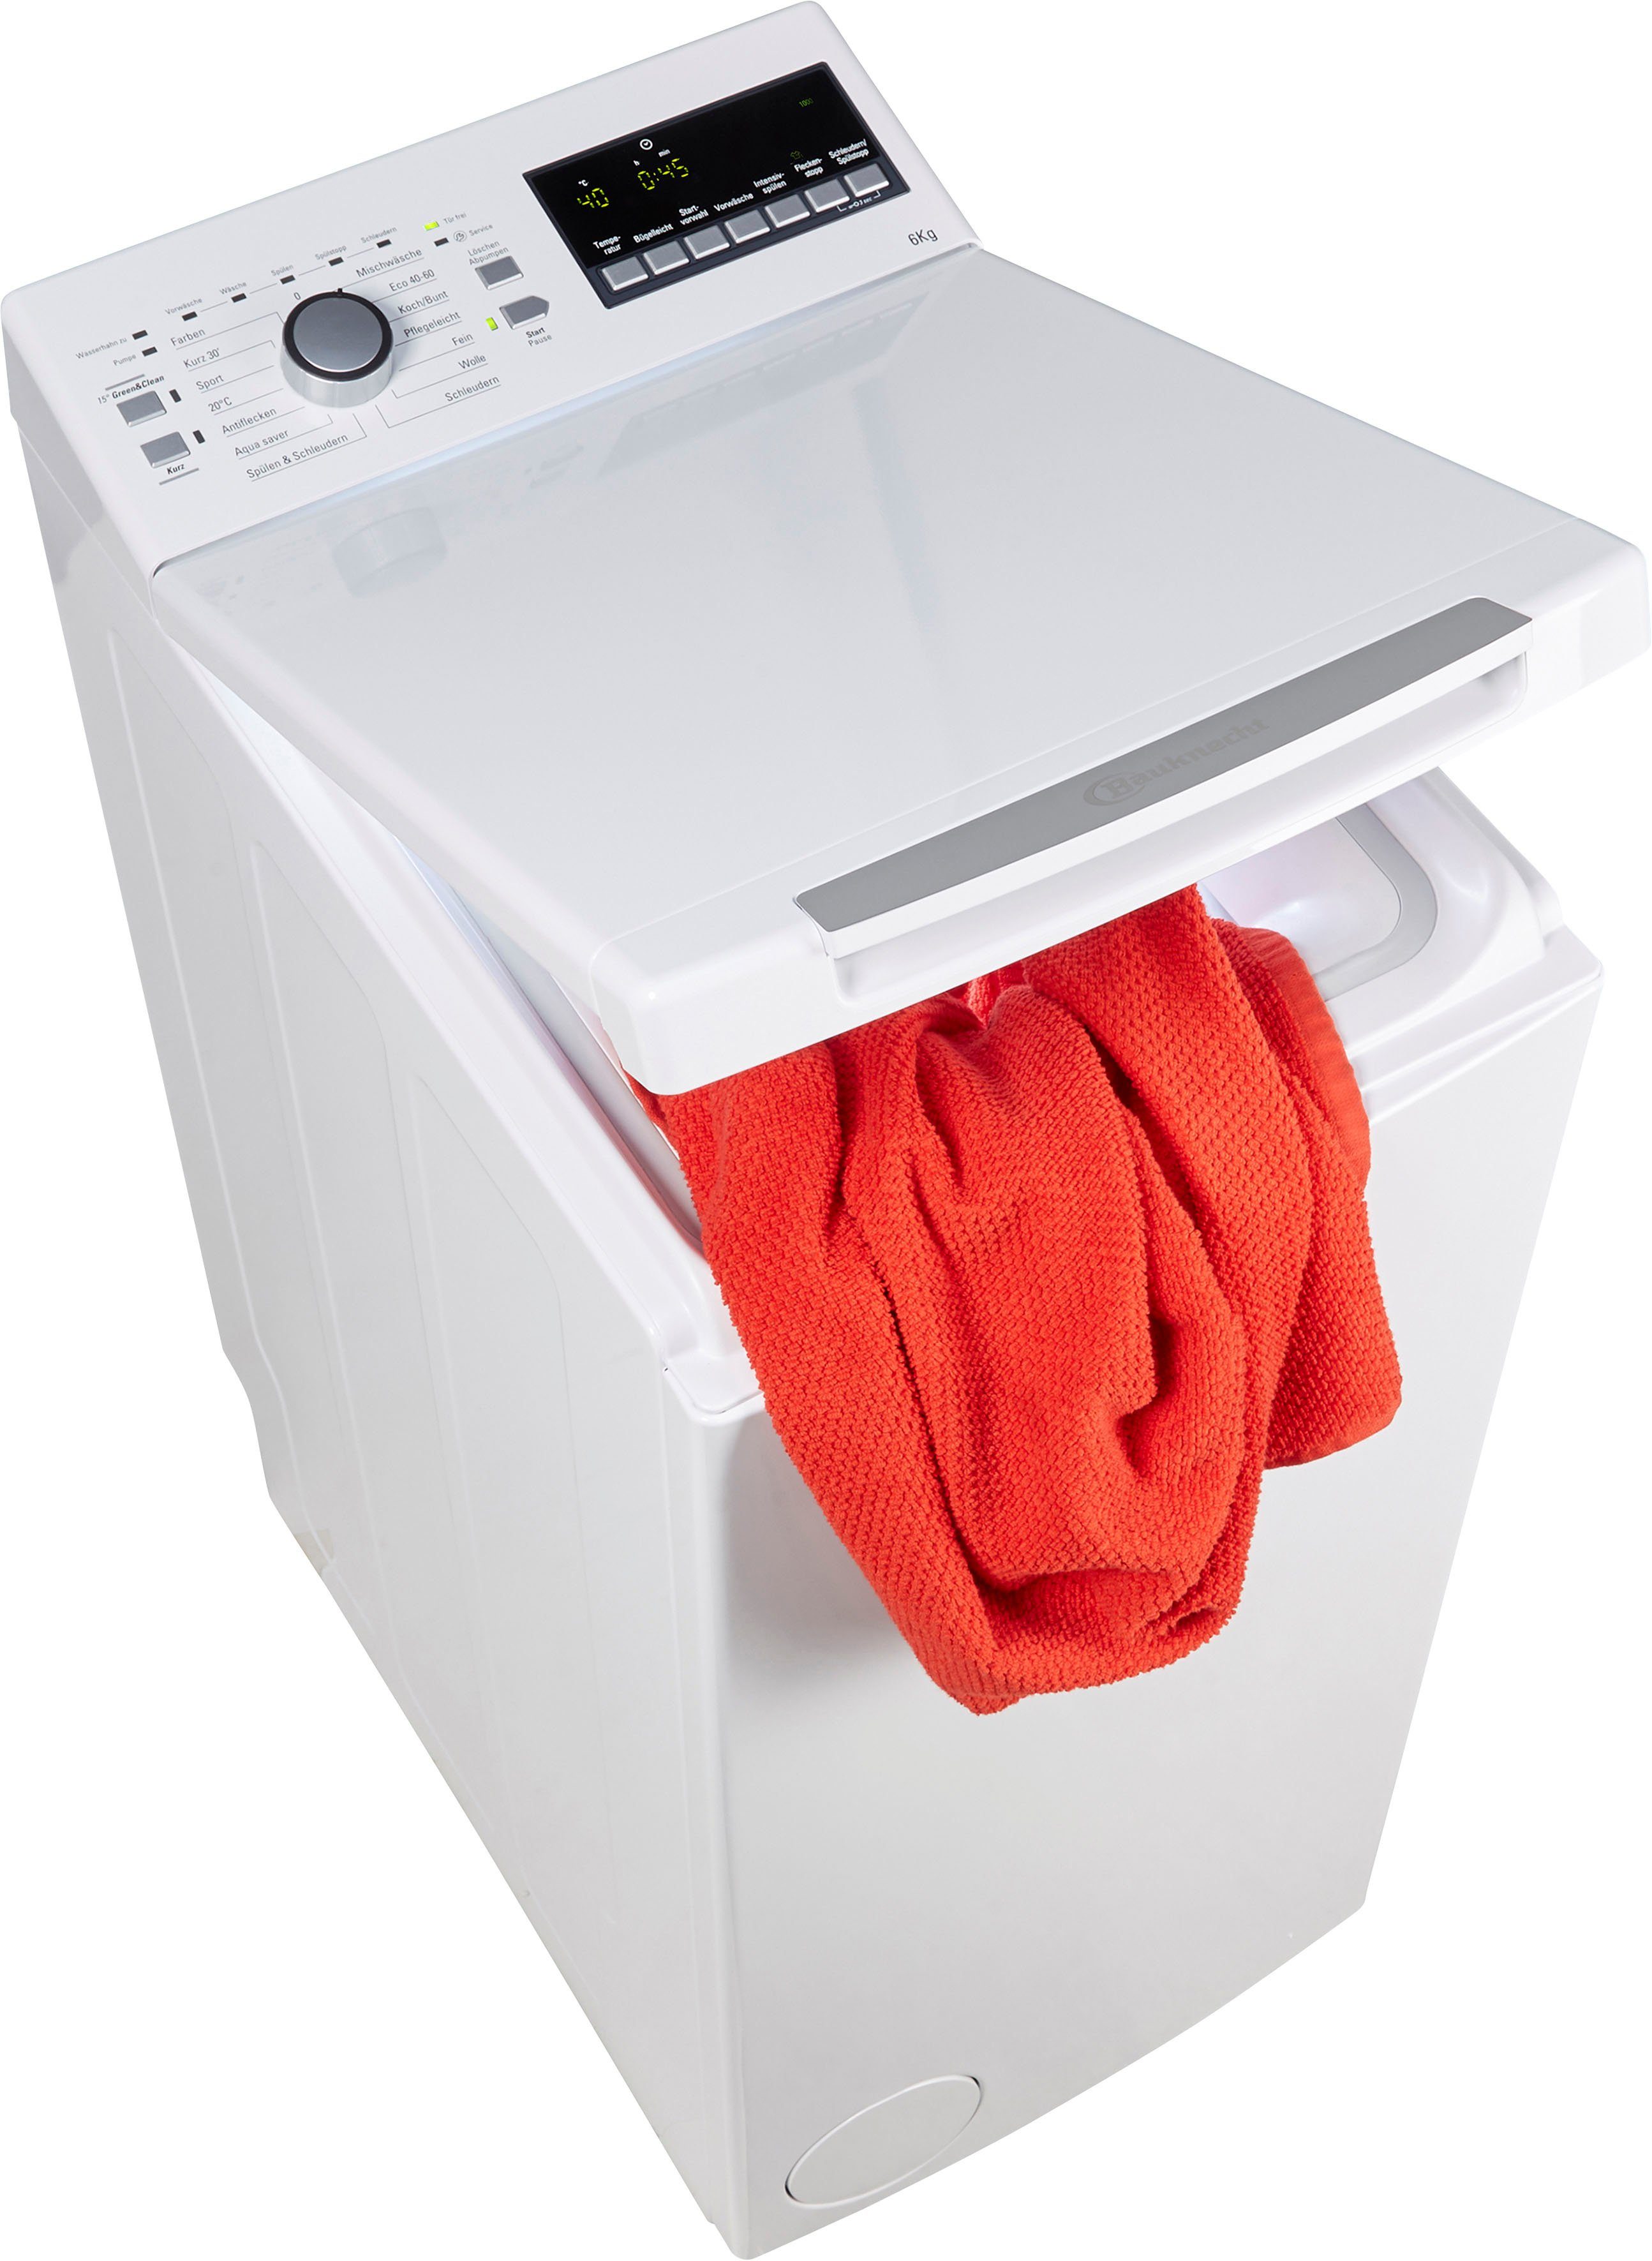 BAUKNECHT Waschmaschine Toplader WAT 6312 N, 6 kg, 1200 U/min online kaufen  | OTTO